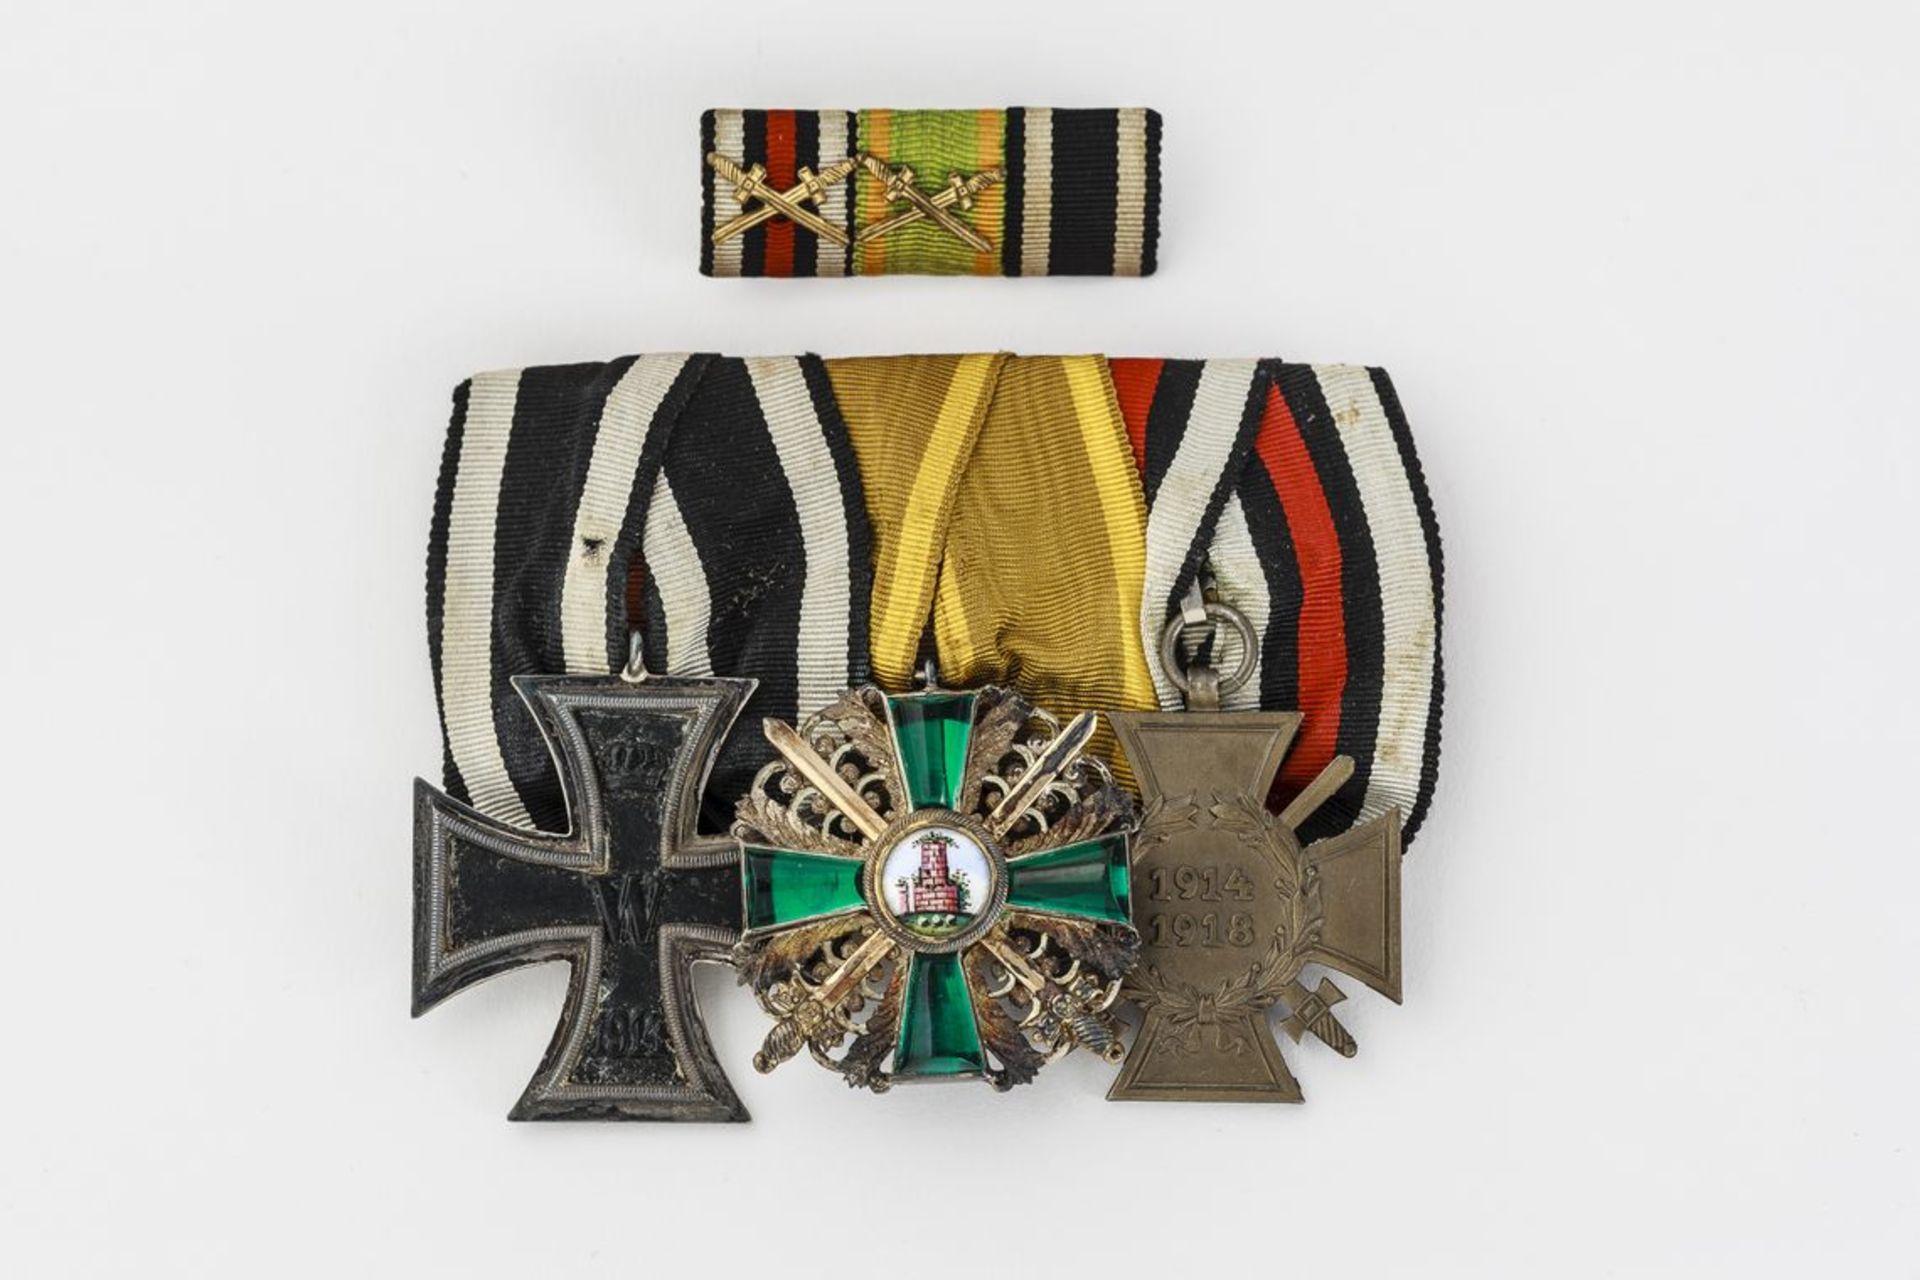 BadenOrdensspange mit drei Orden: Eisernes Kreuz 2. Kl. 1914. Orden vom Zähringer Löwen